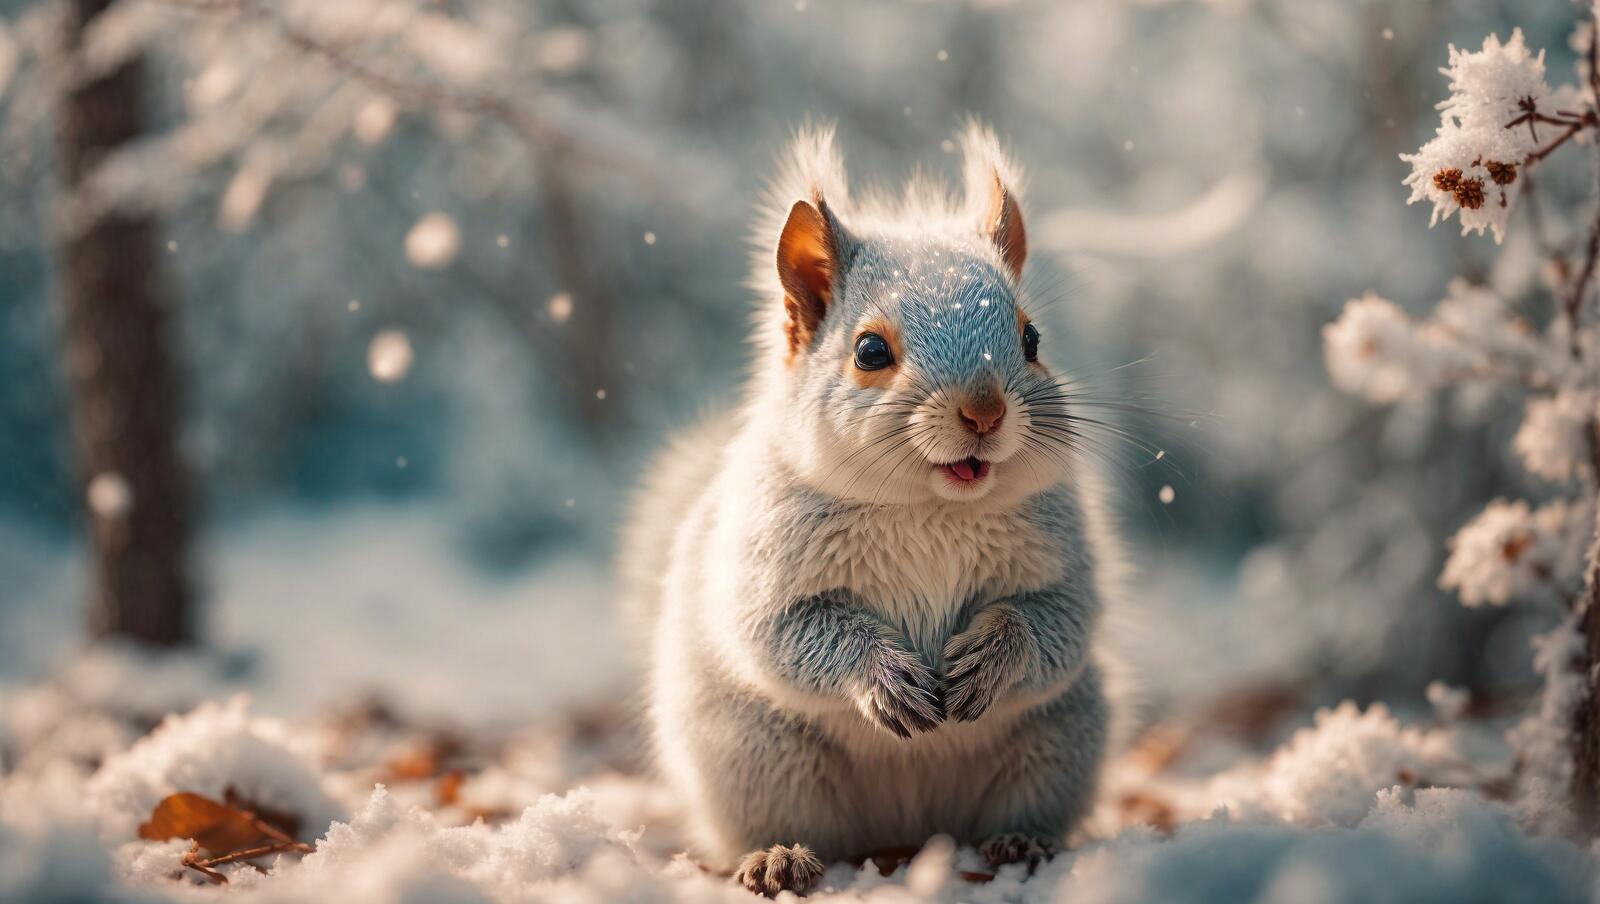 Бесплатное фото Белка с голубой краской на голове сидит на снегу